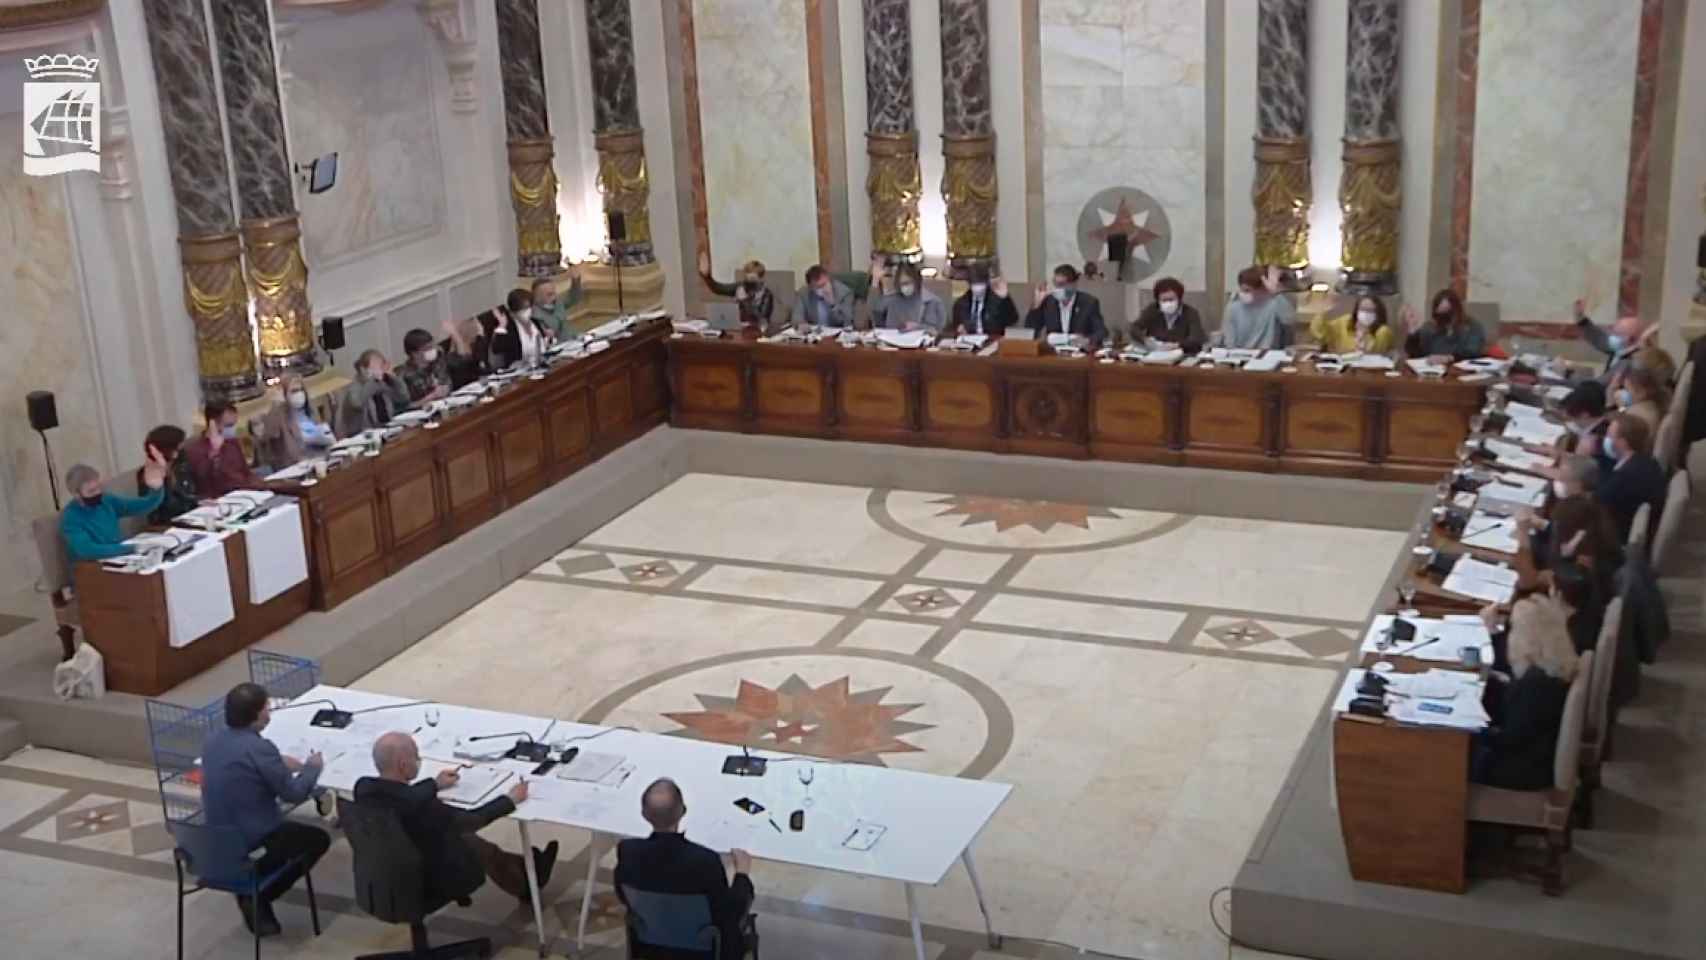 Momento de la votación de la propuesta de concesión de la Medalla de Oro de San Sebastián a Pío Baroja en el pleno municipal del 24 de febrero